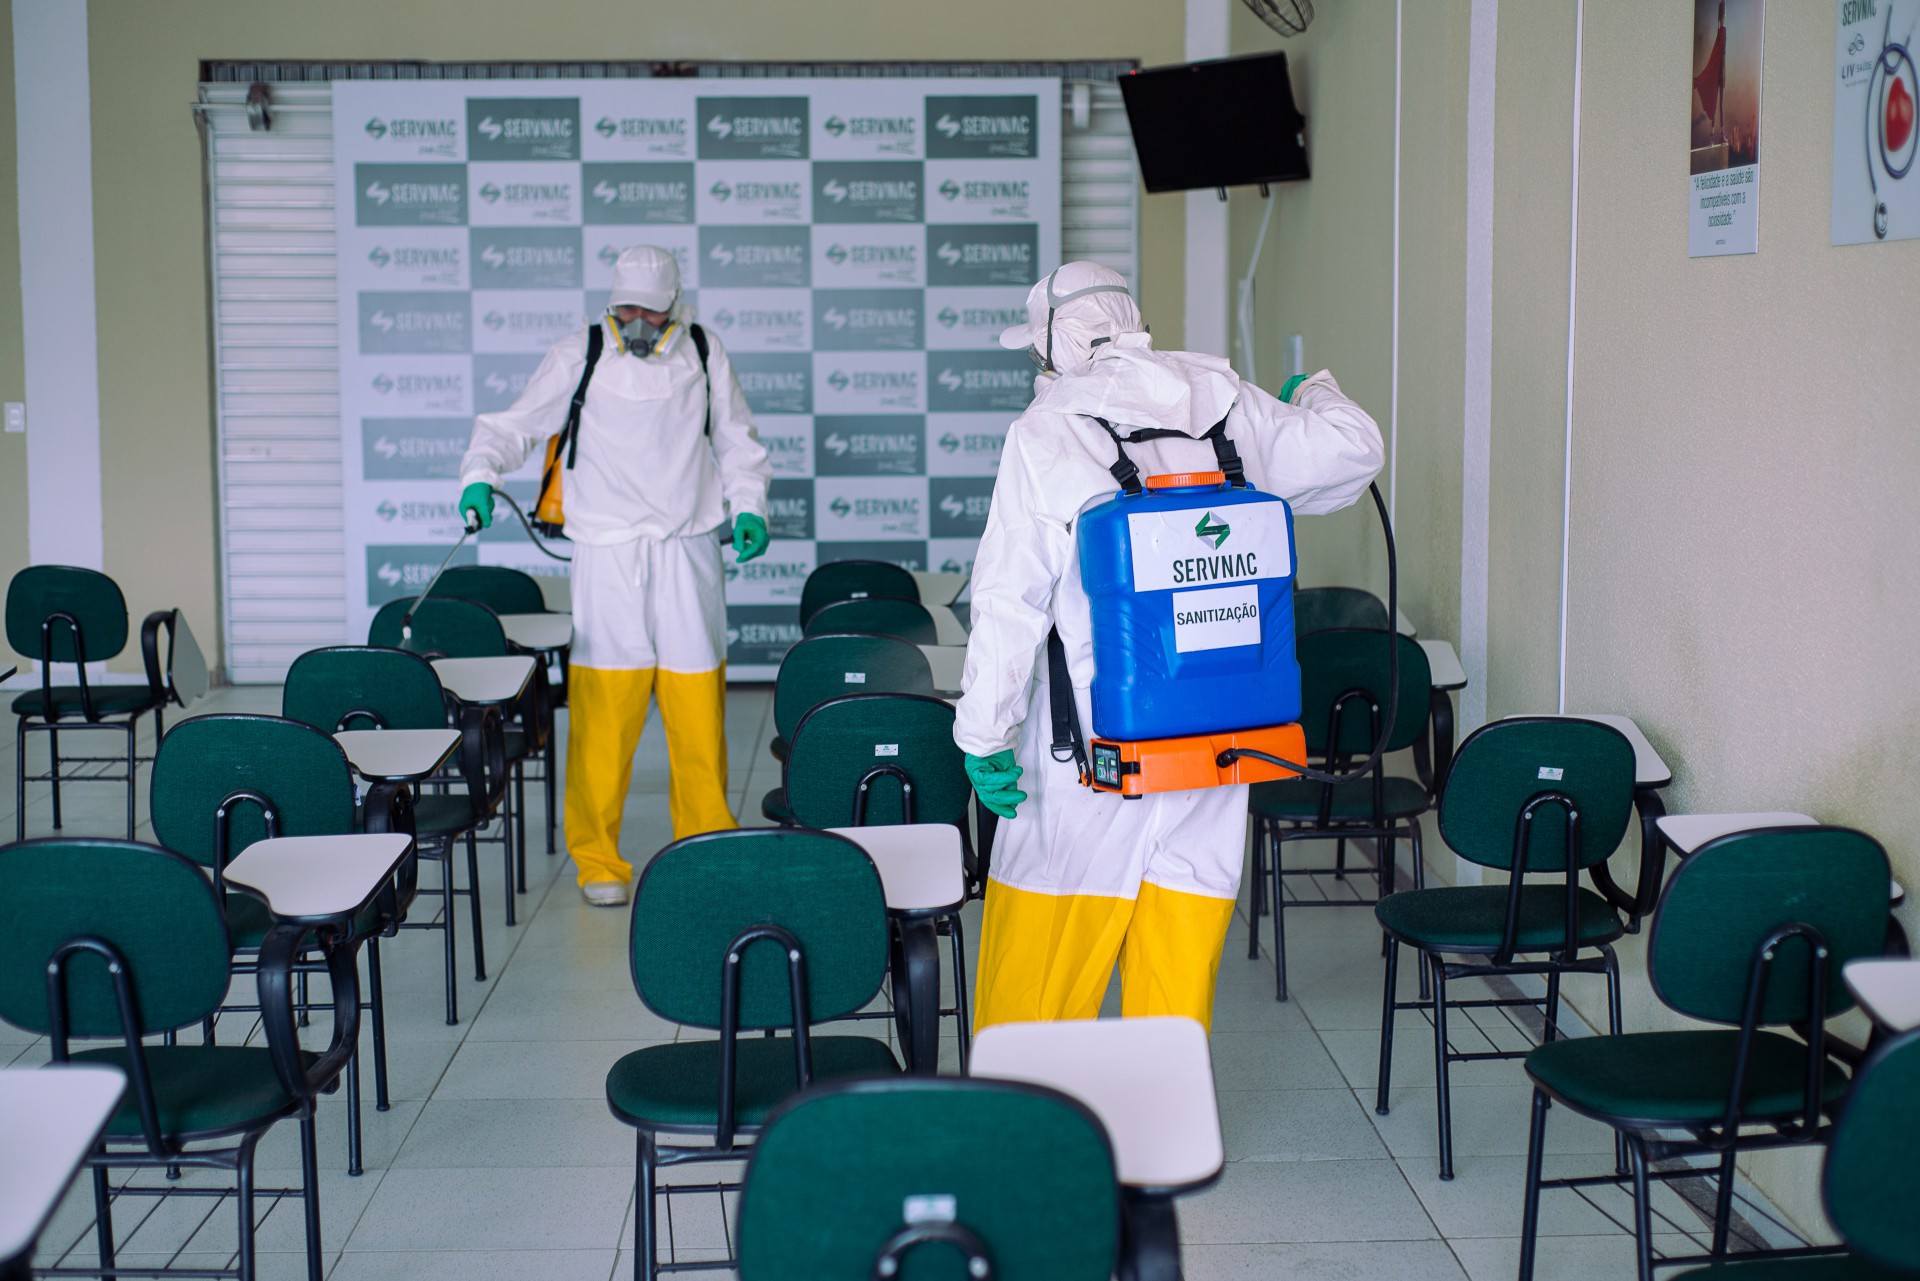 Servnac inovou no portfólio de serviços e lançou opções em dedetização e sanitização após observar demanda na pandemia
 (Foto: Josy Lima / Divulgação)